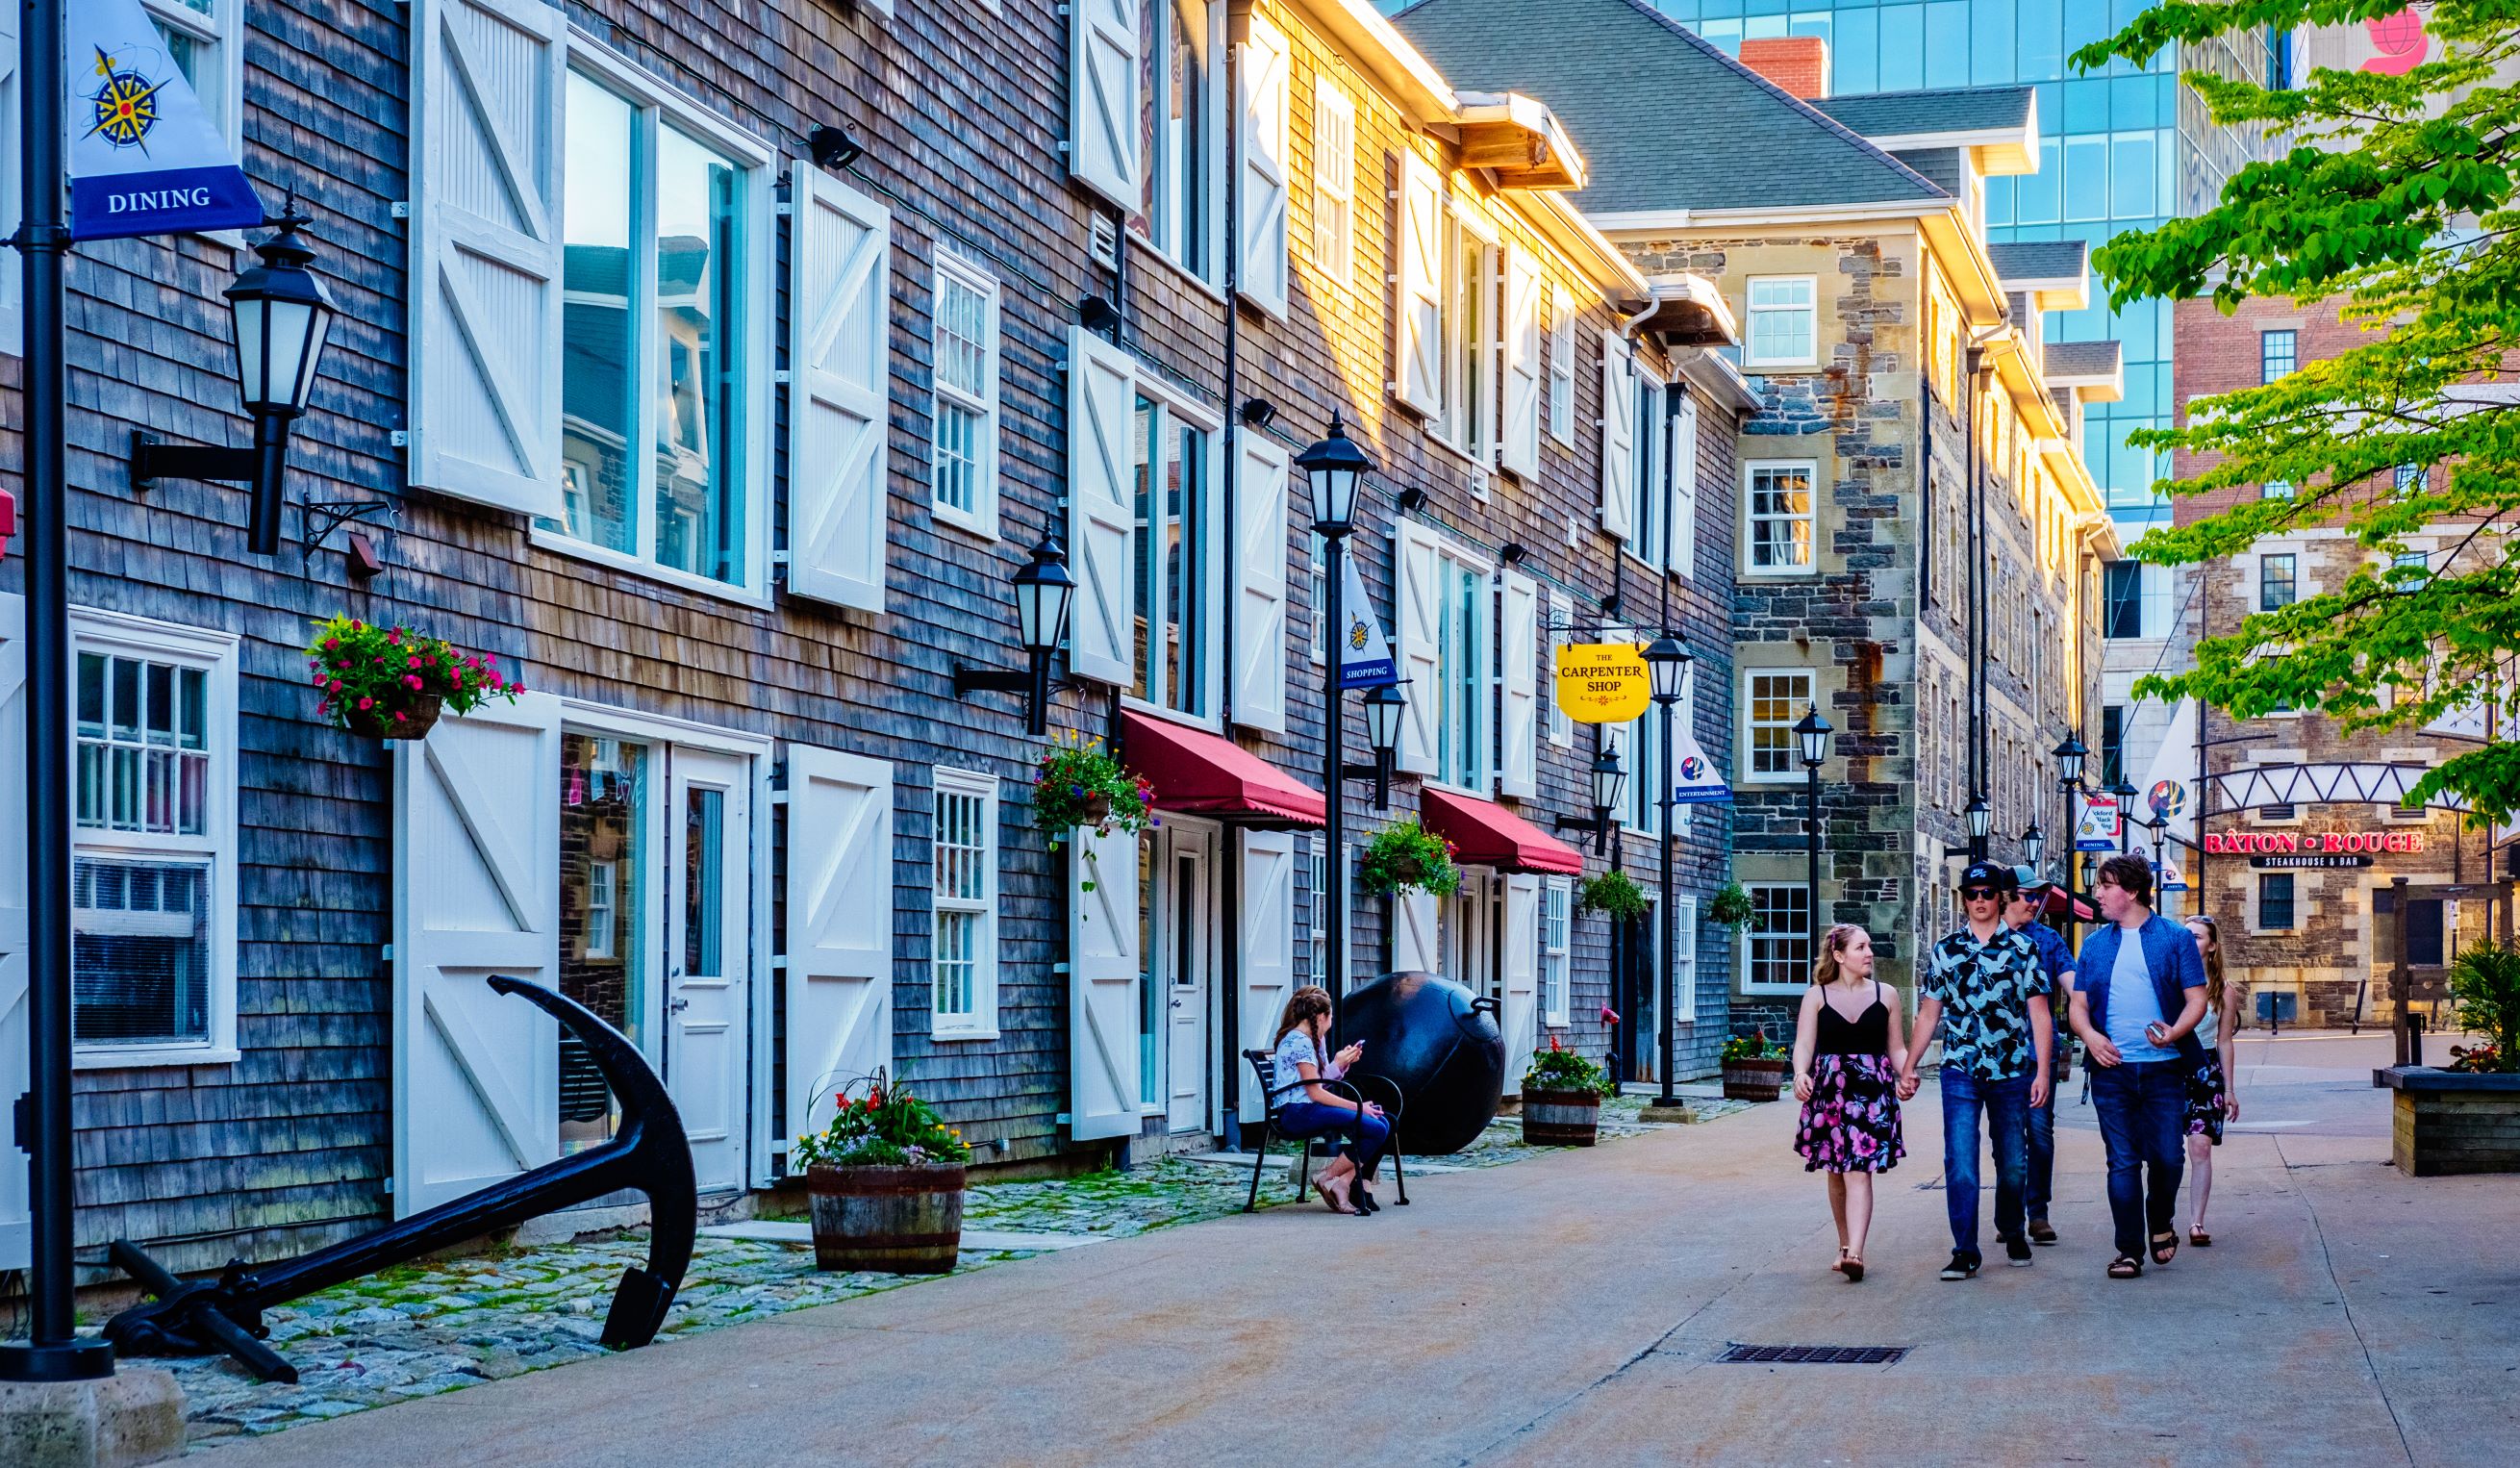 Des gens marchent dans une rue de la ville historique de Halifax.